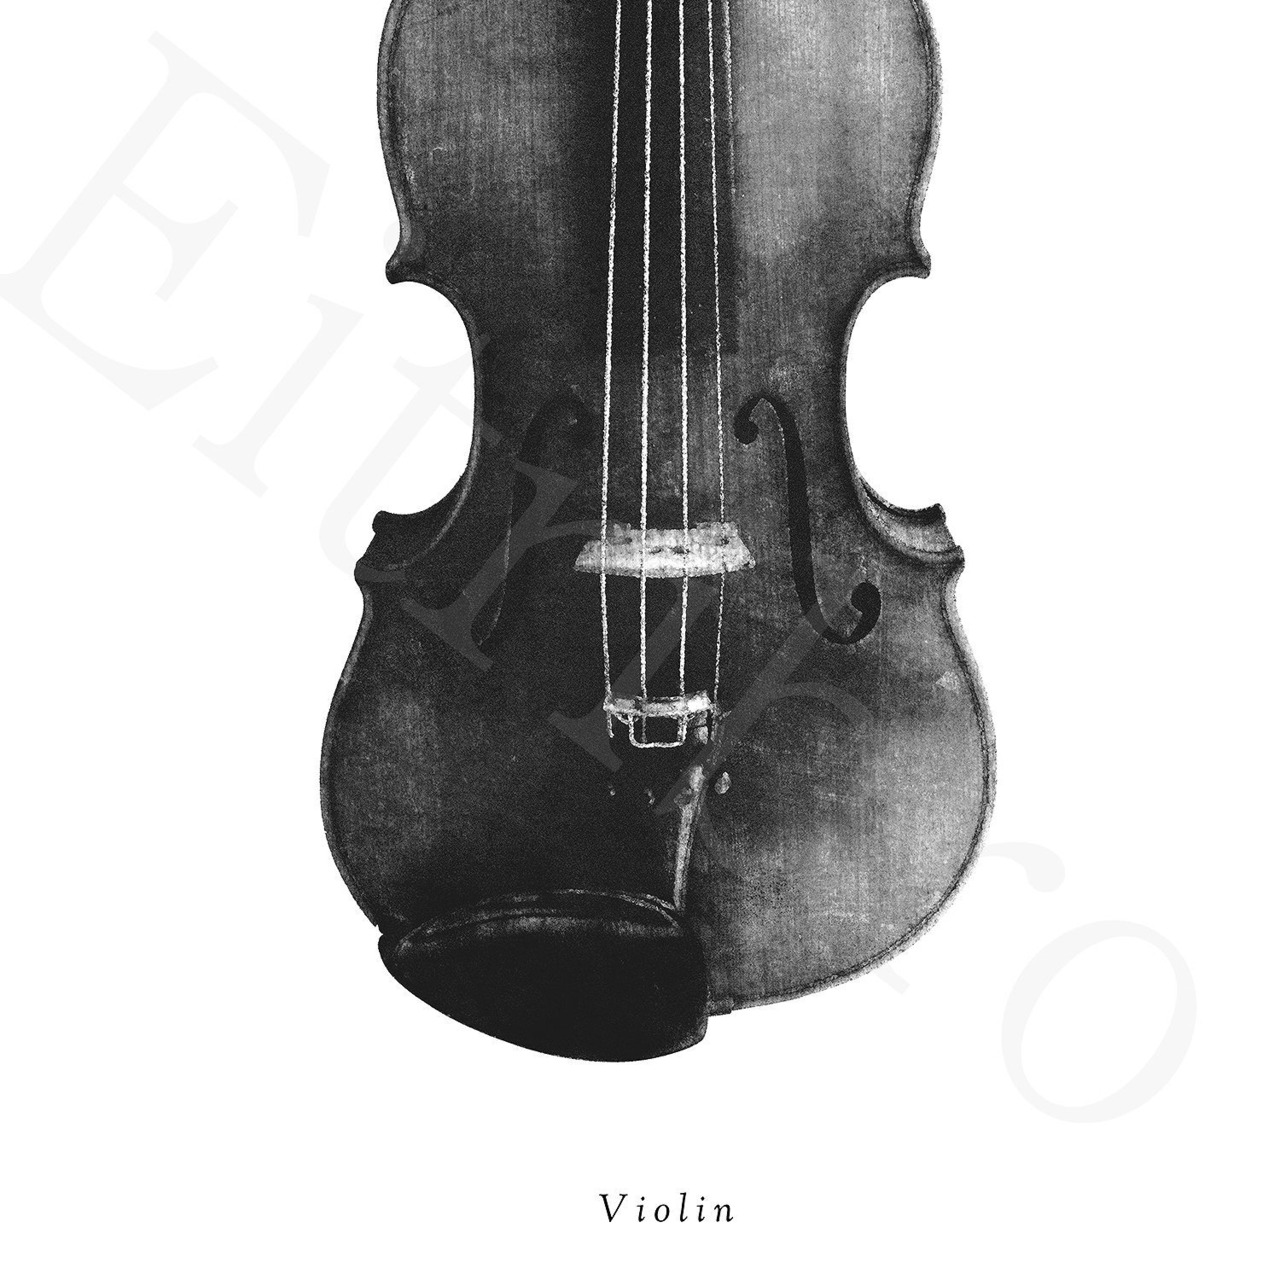 アートポスター / Violin-mono   eb132